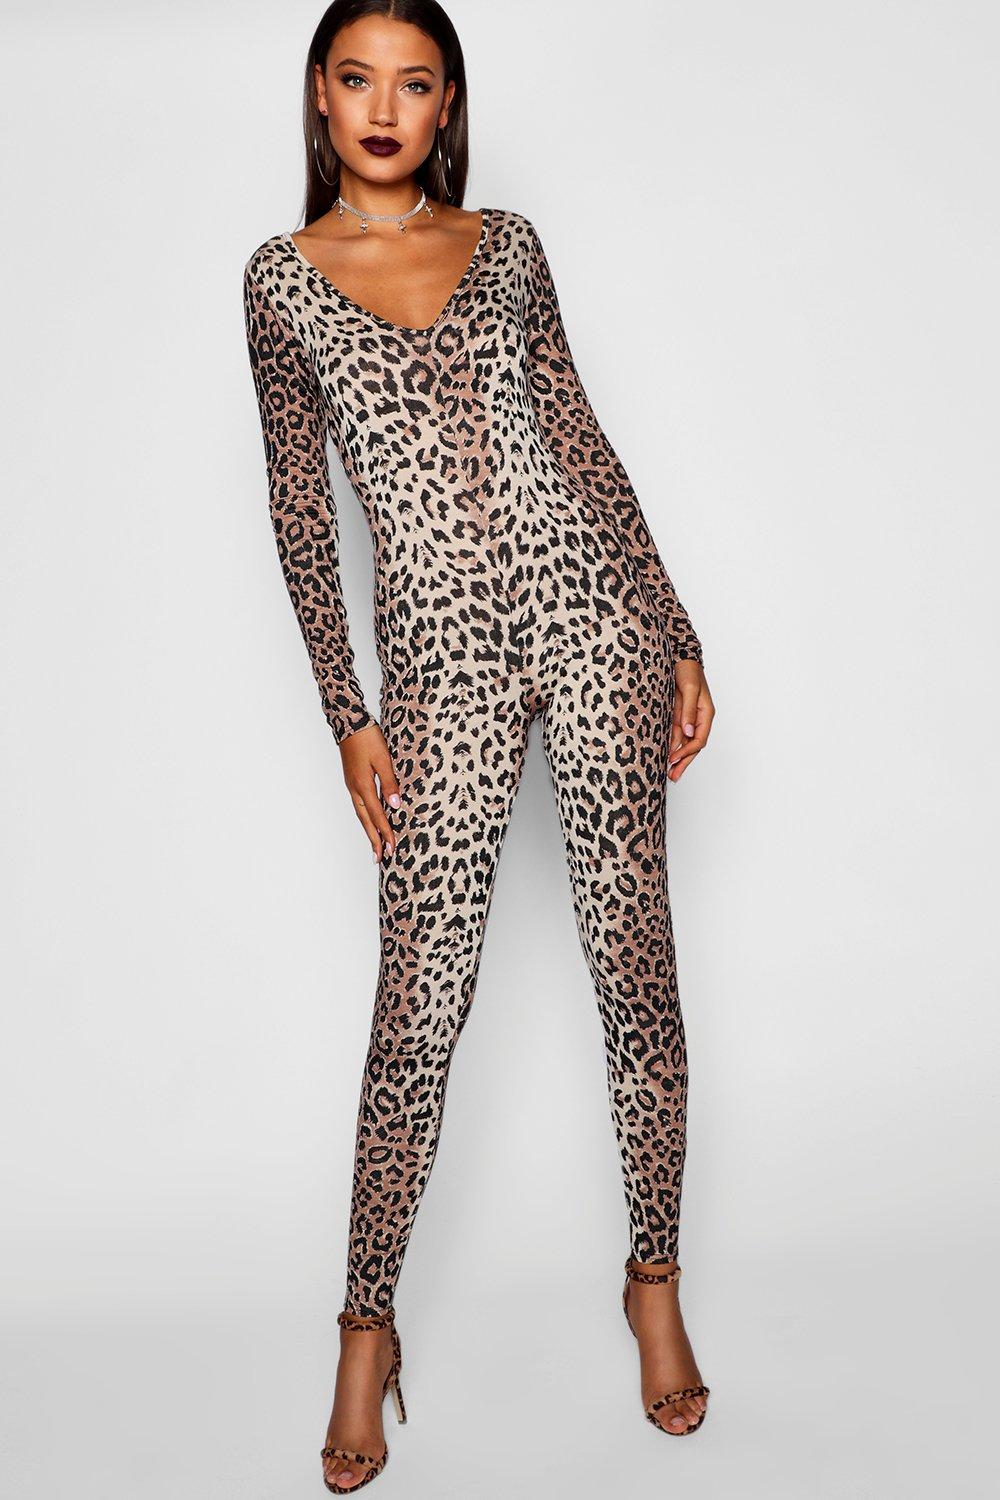 Leopard catsuit fan image